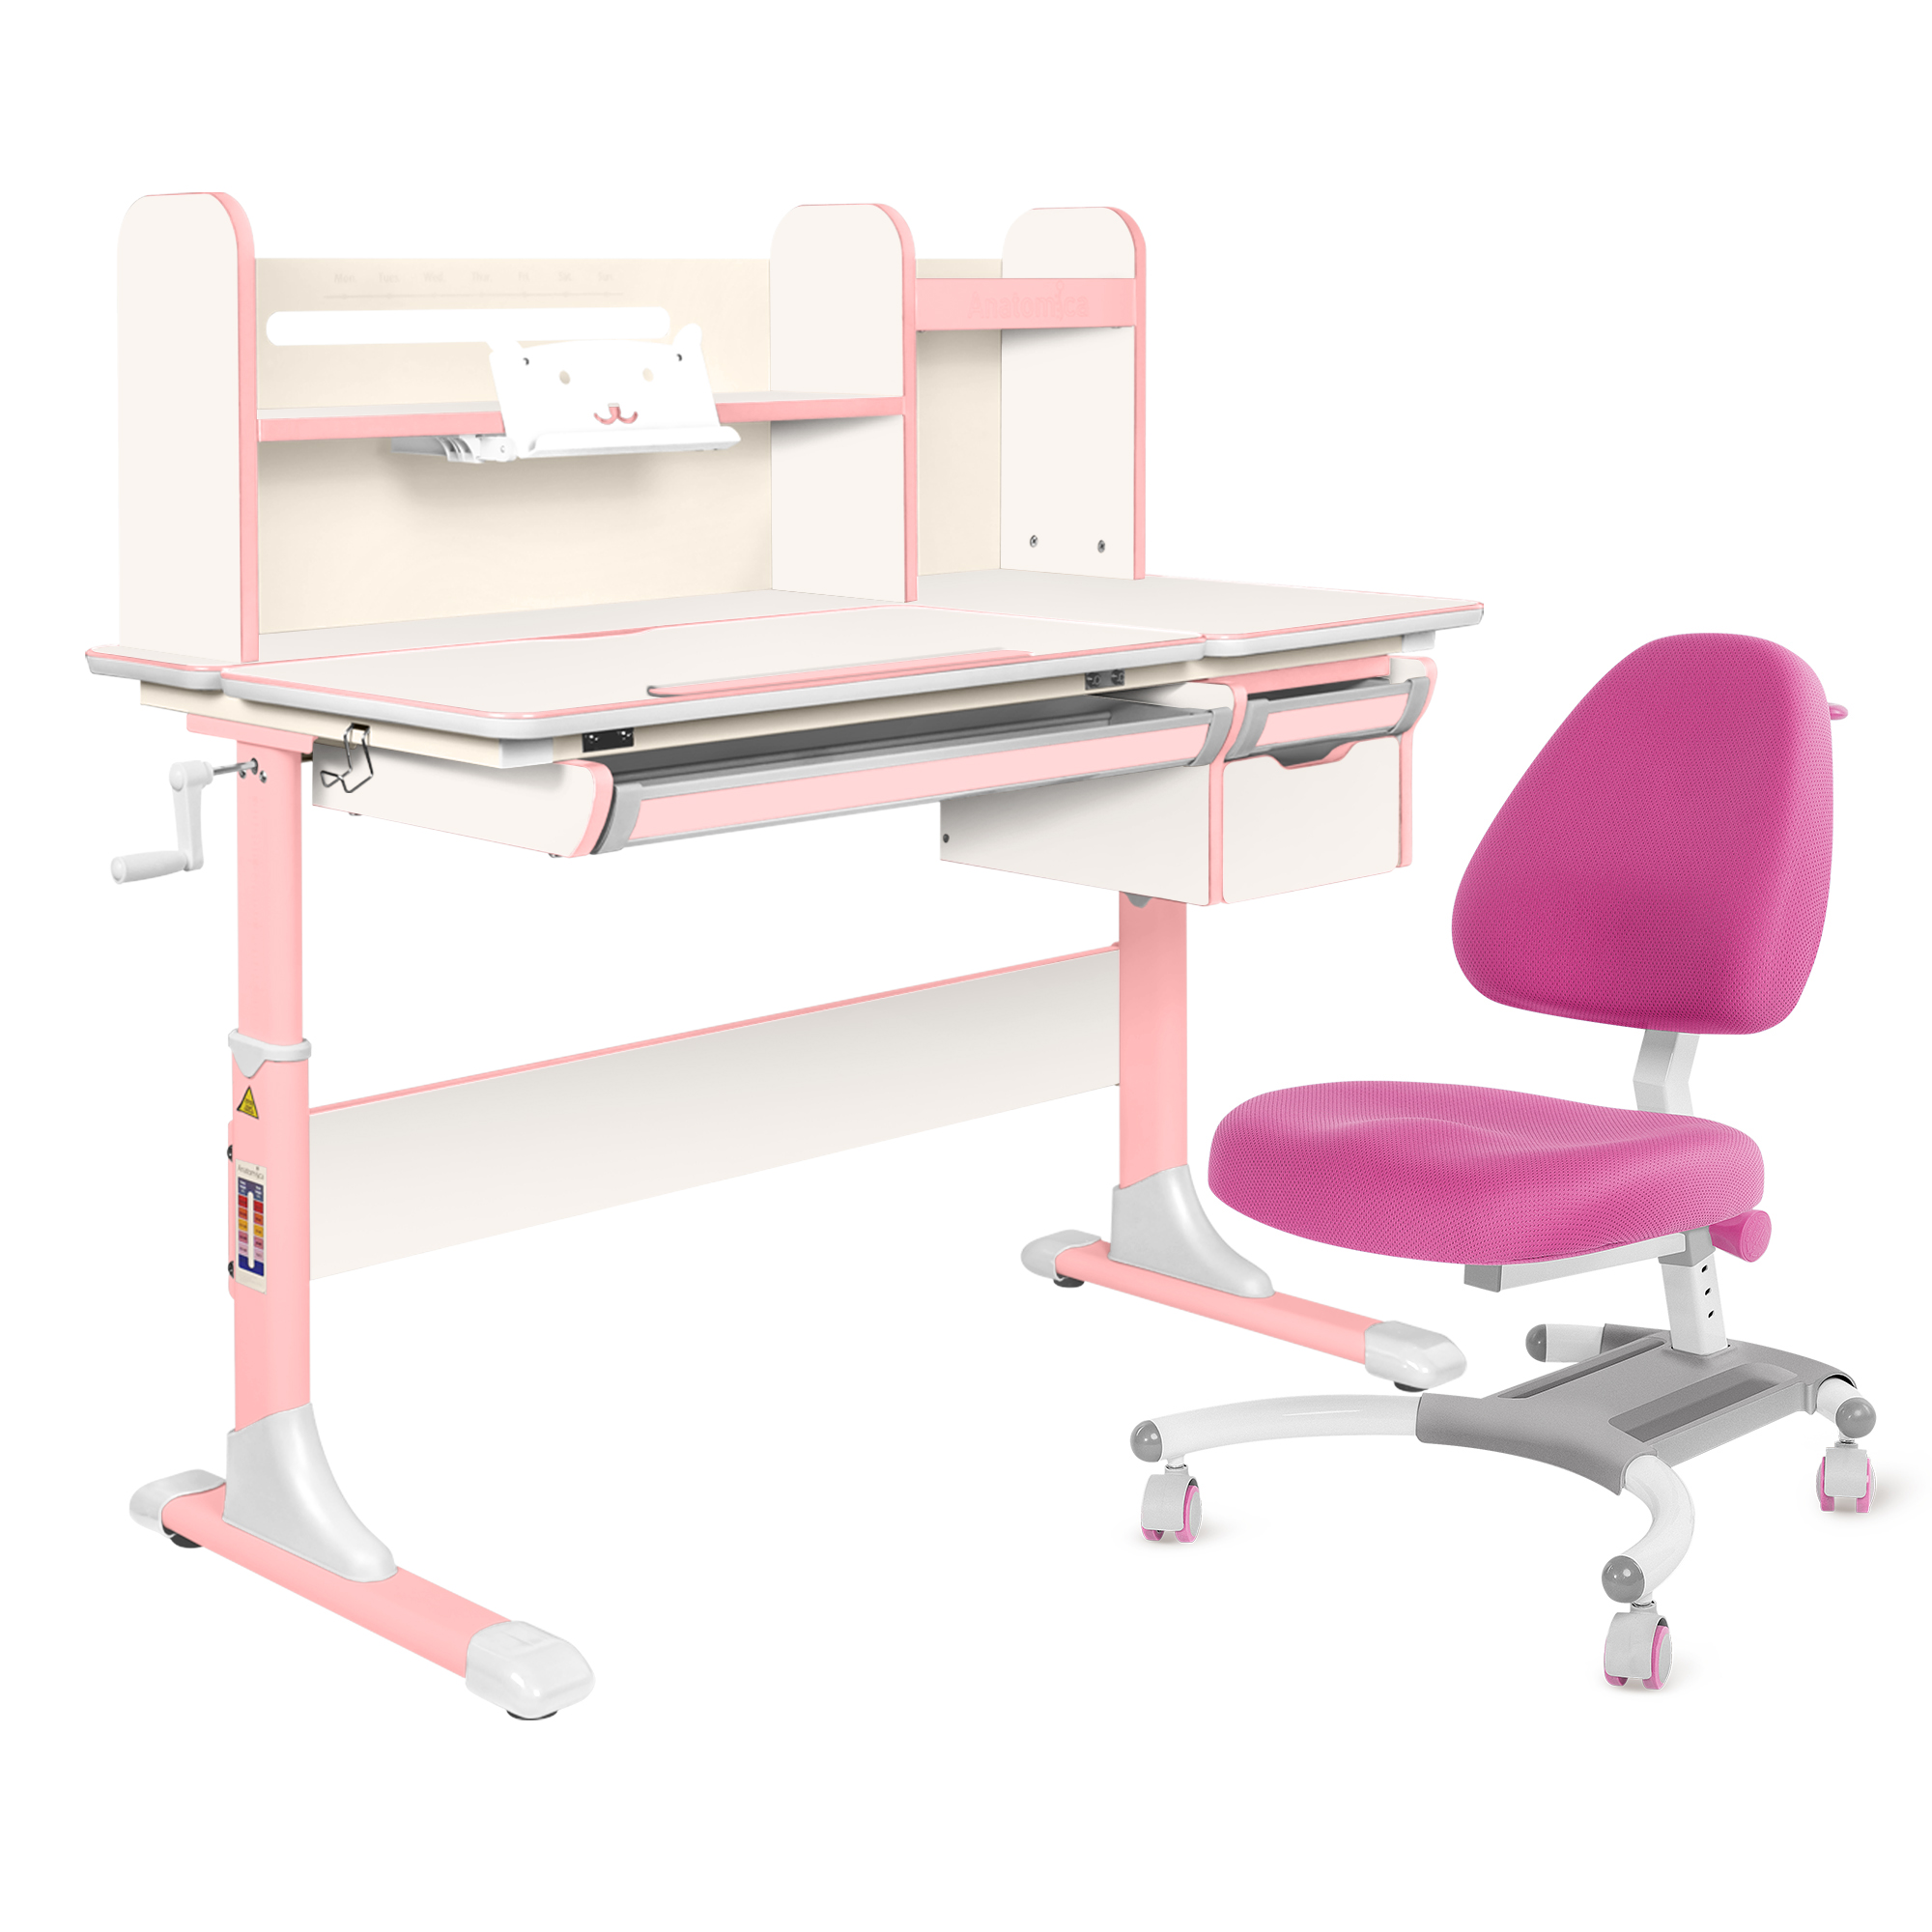 Комплект Anatomica парта Genius белый/розовый с розовым креслом Figra комплект anatomica парта genius клен розовый с розовым креслом figra